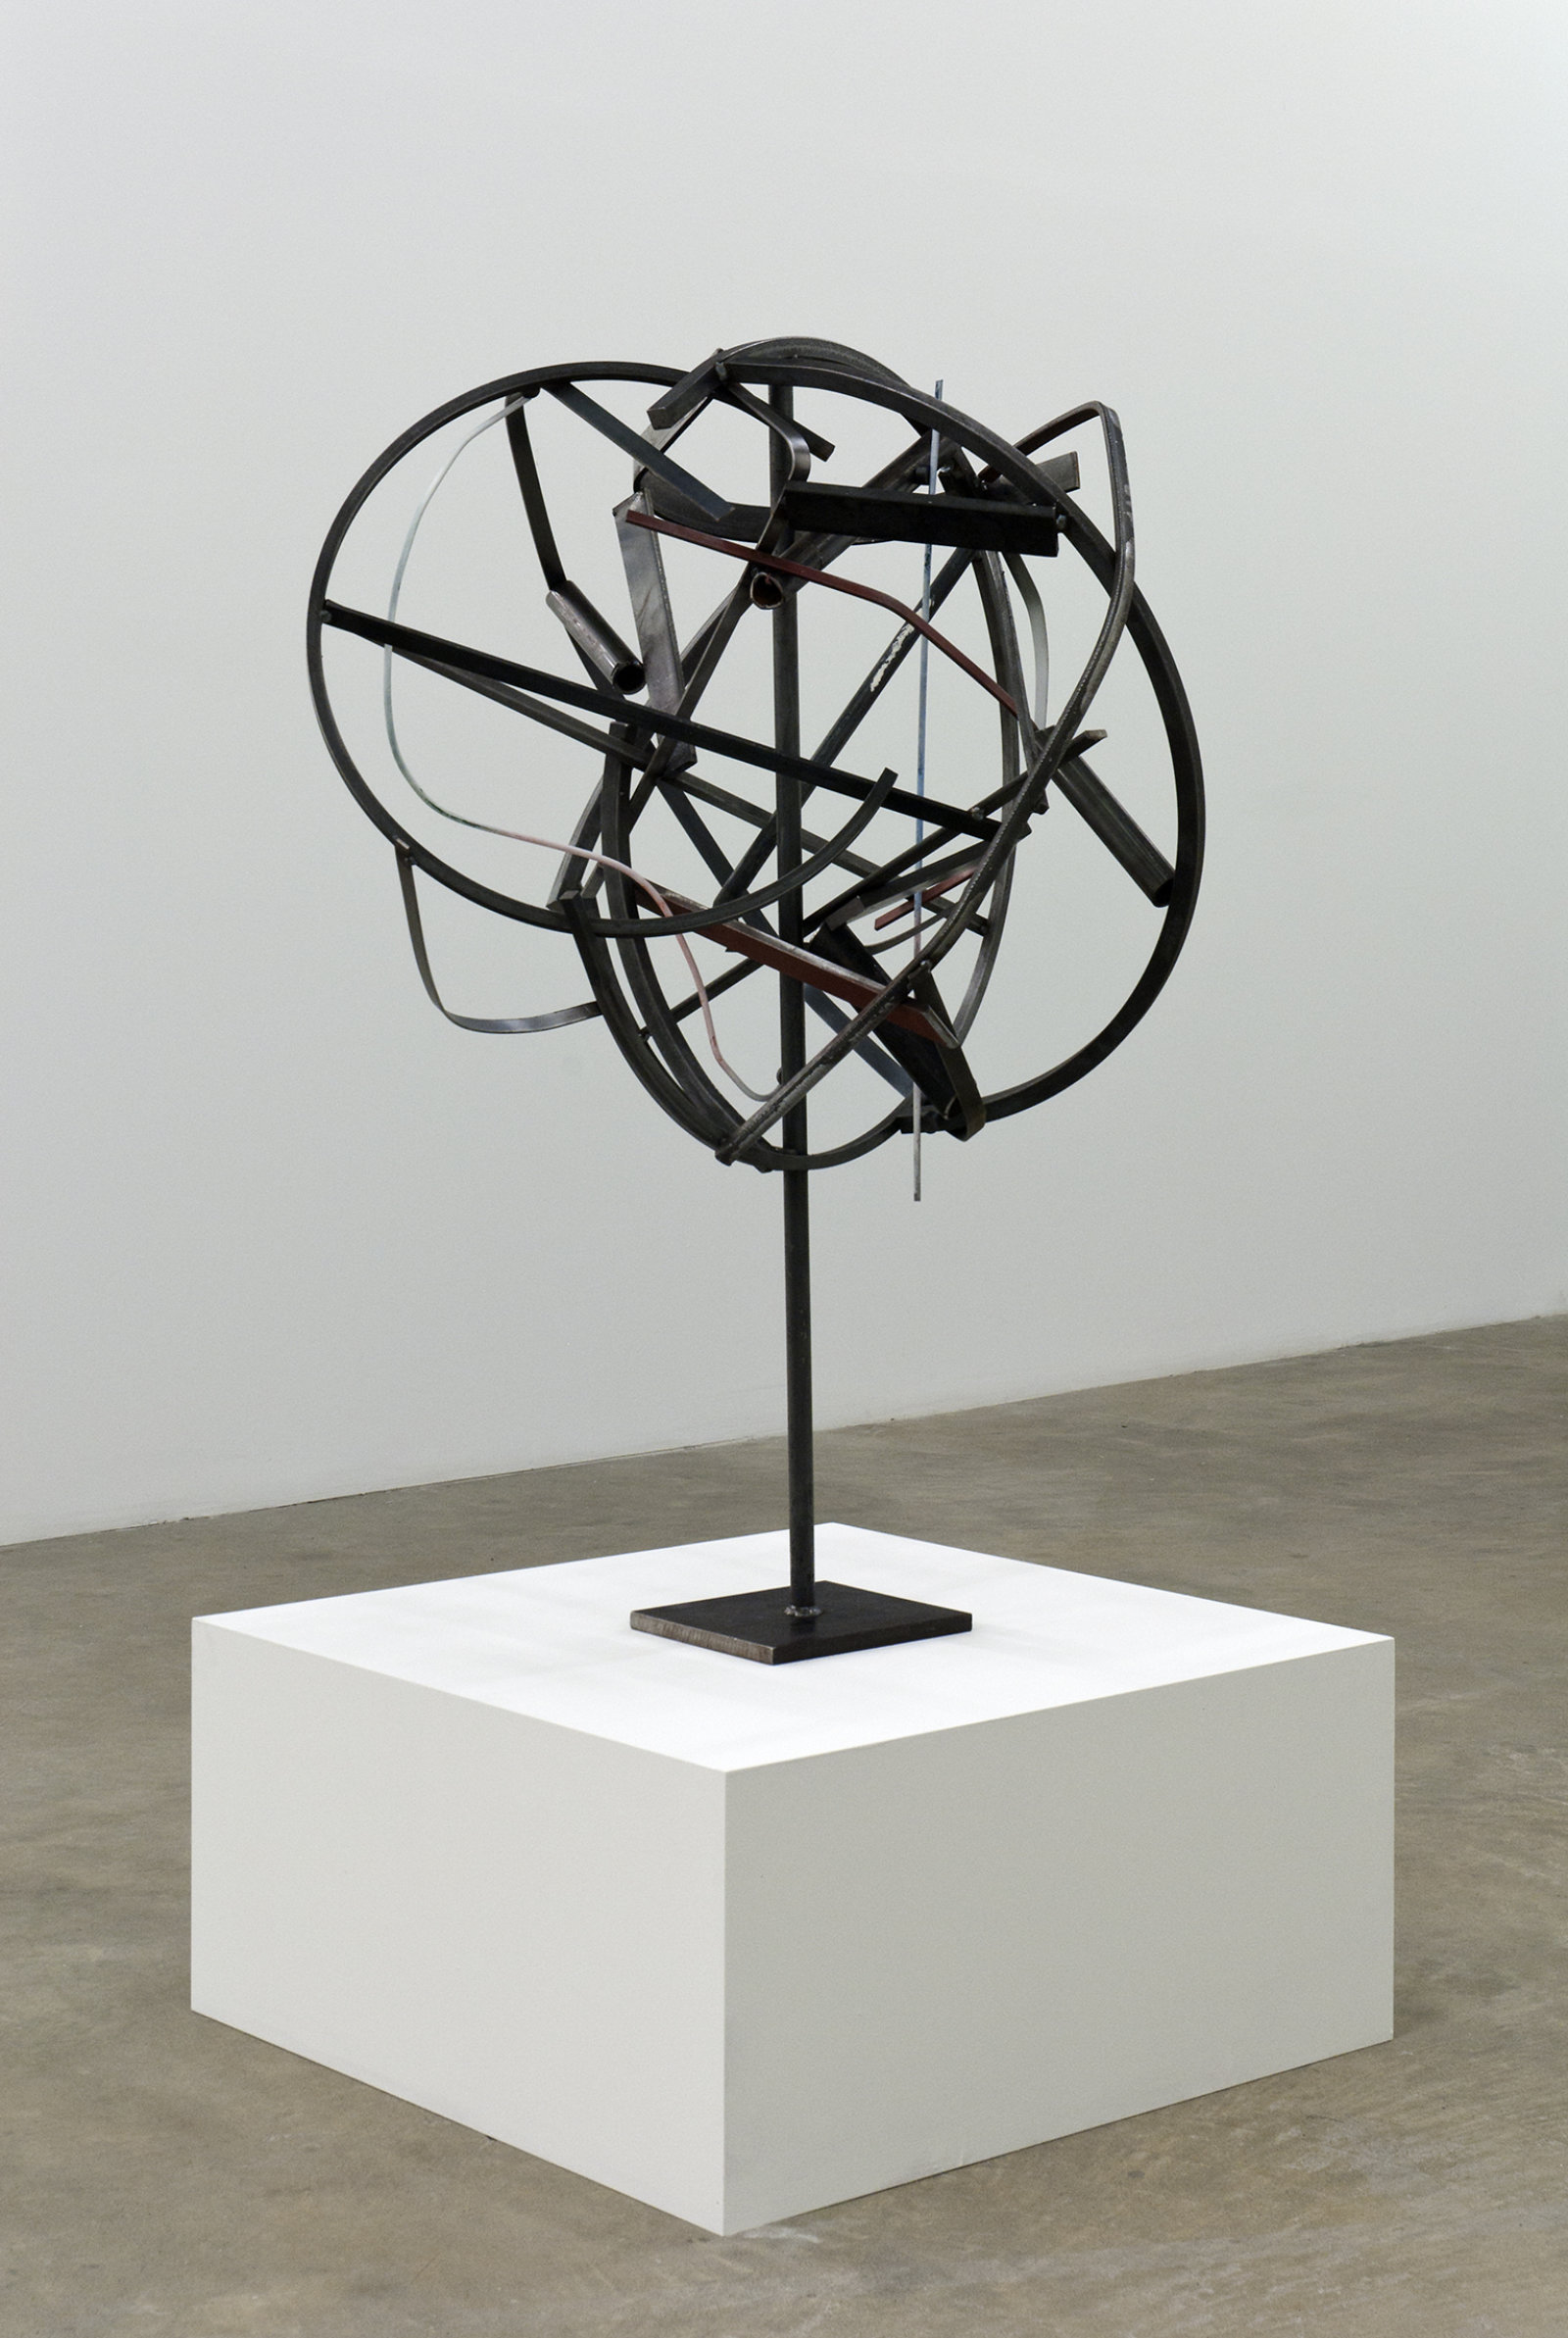 Damian Moppett, Untitled, 2010, steel, magnets, 47 x 31 x 30 in. (119 x 79 x 76 cm)